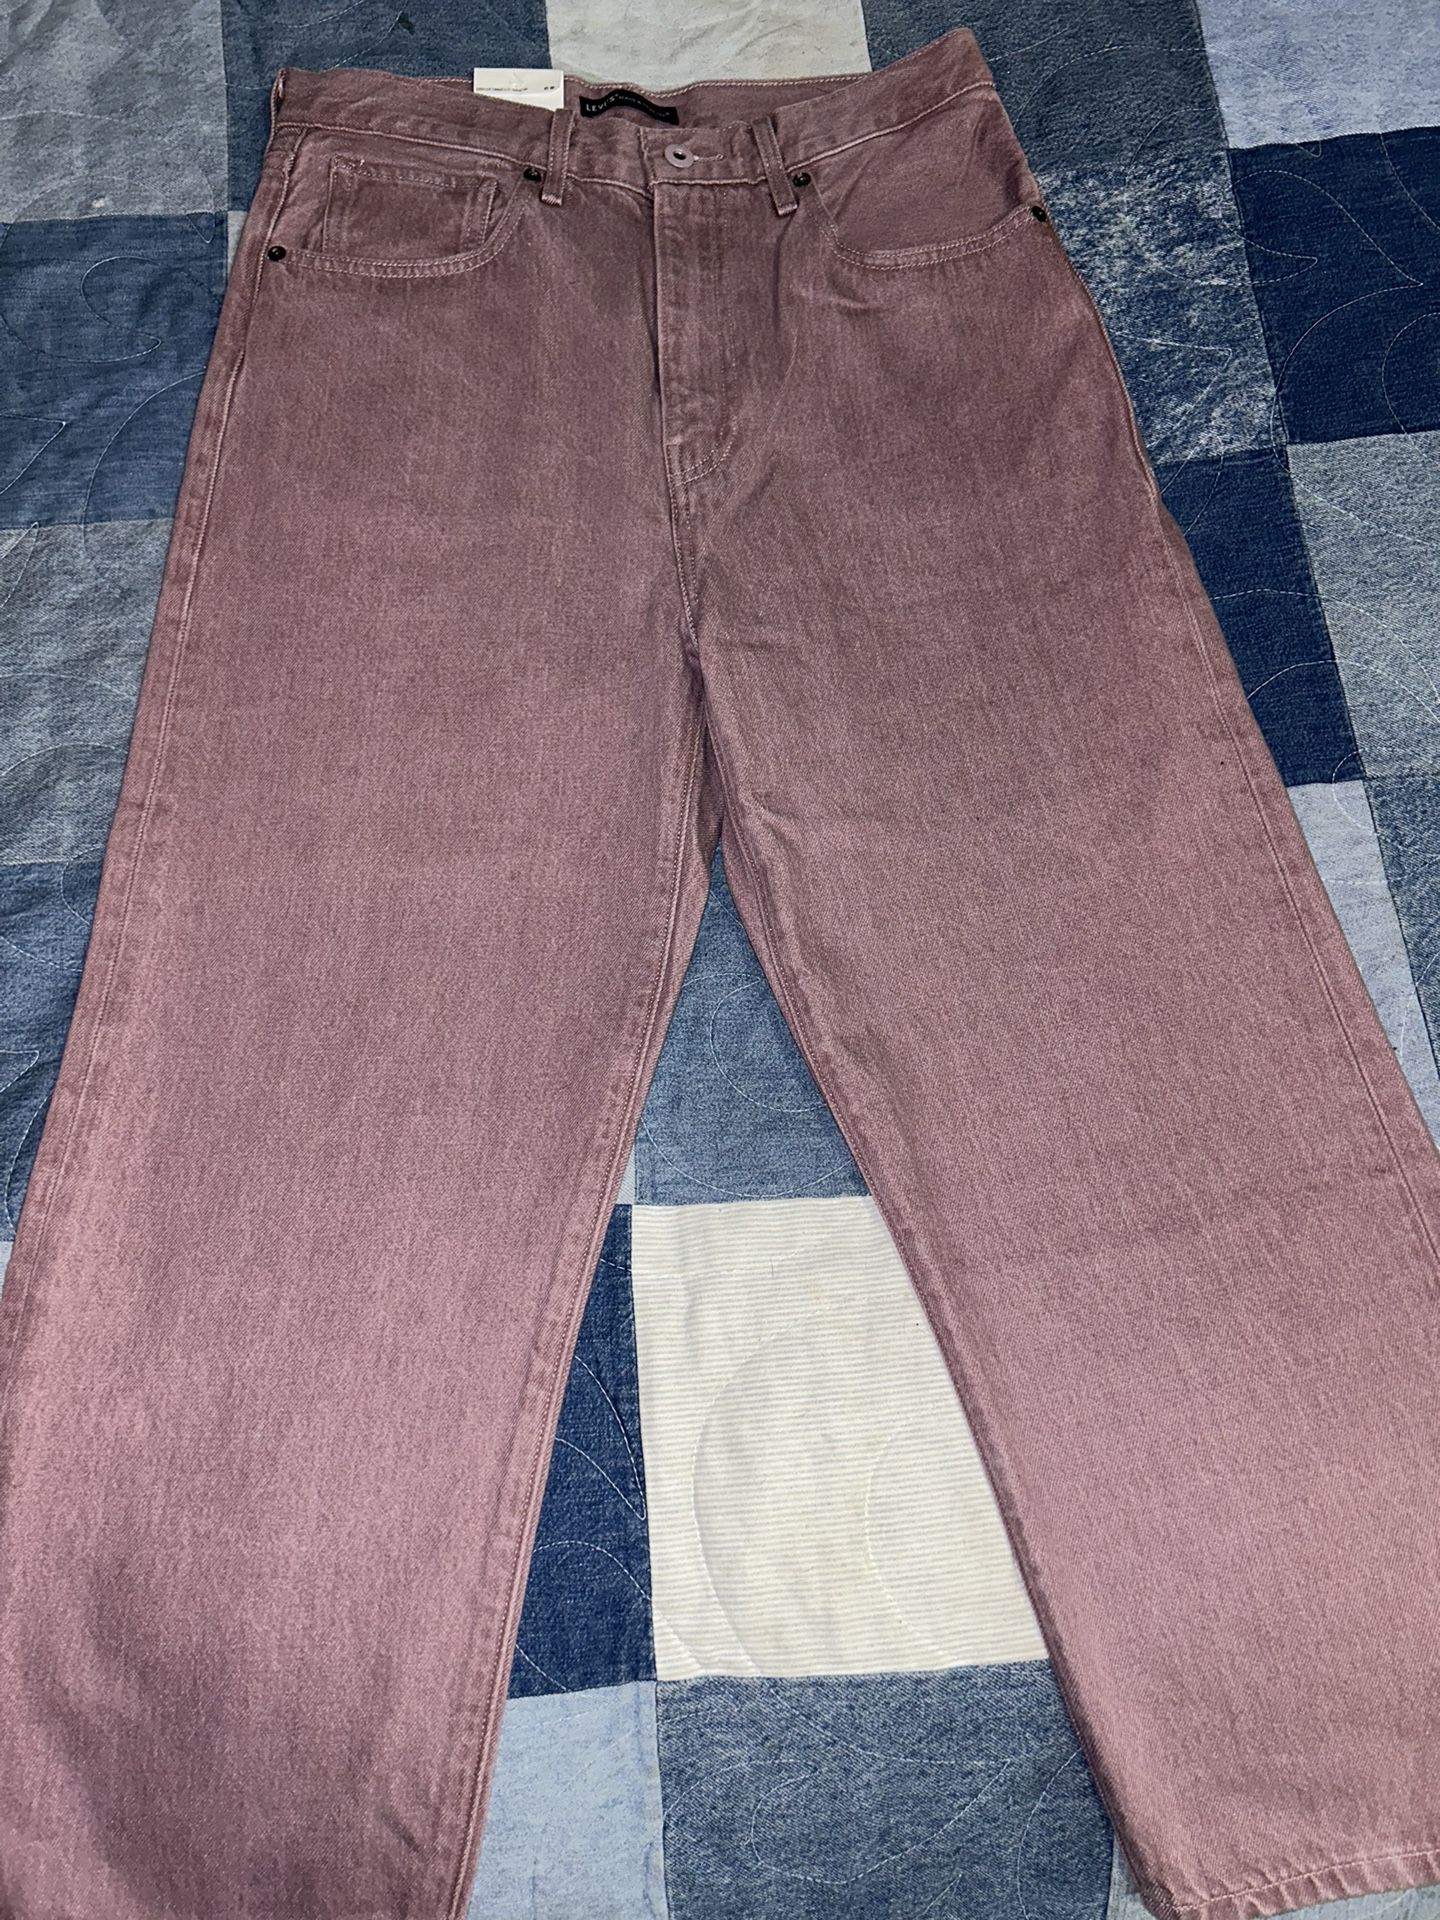 Purple Brand Jeans for Sale in Phoenix, AZ - OfferUp